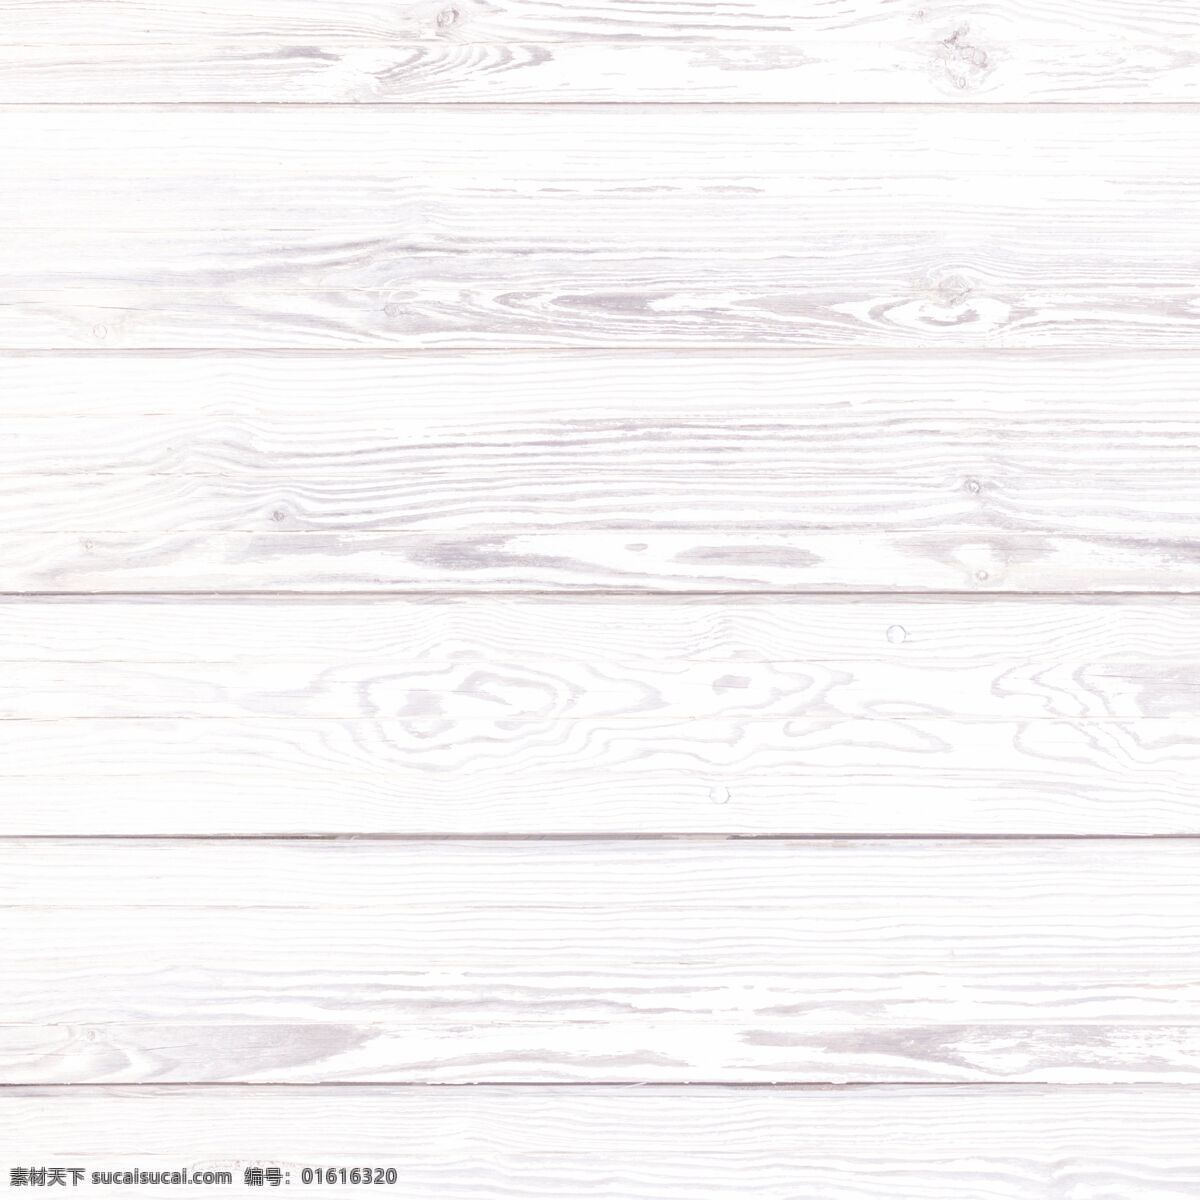 木纹 花纹 木板 材料 纹路 木头 背景 背景底纹 底纹边框 条纹线条